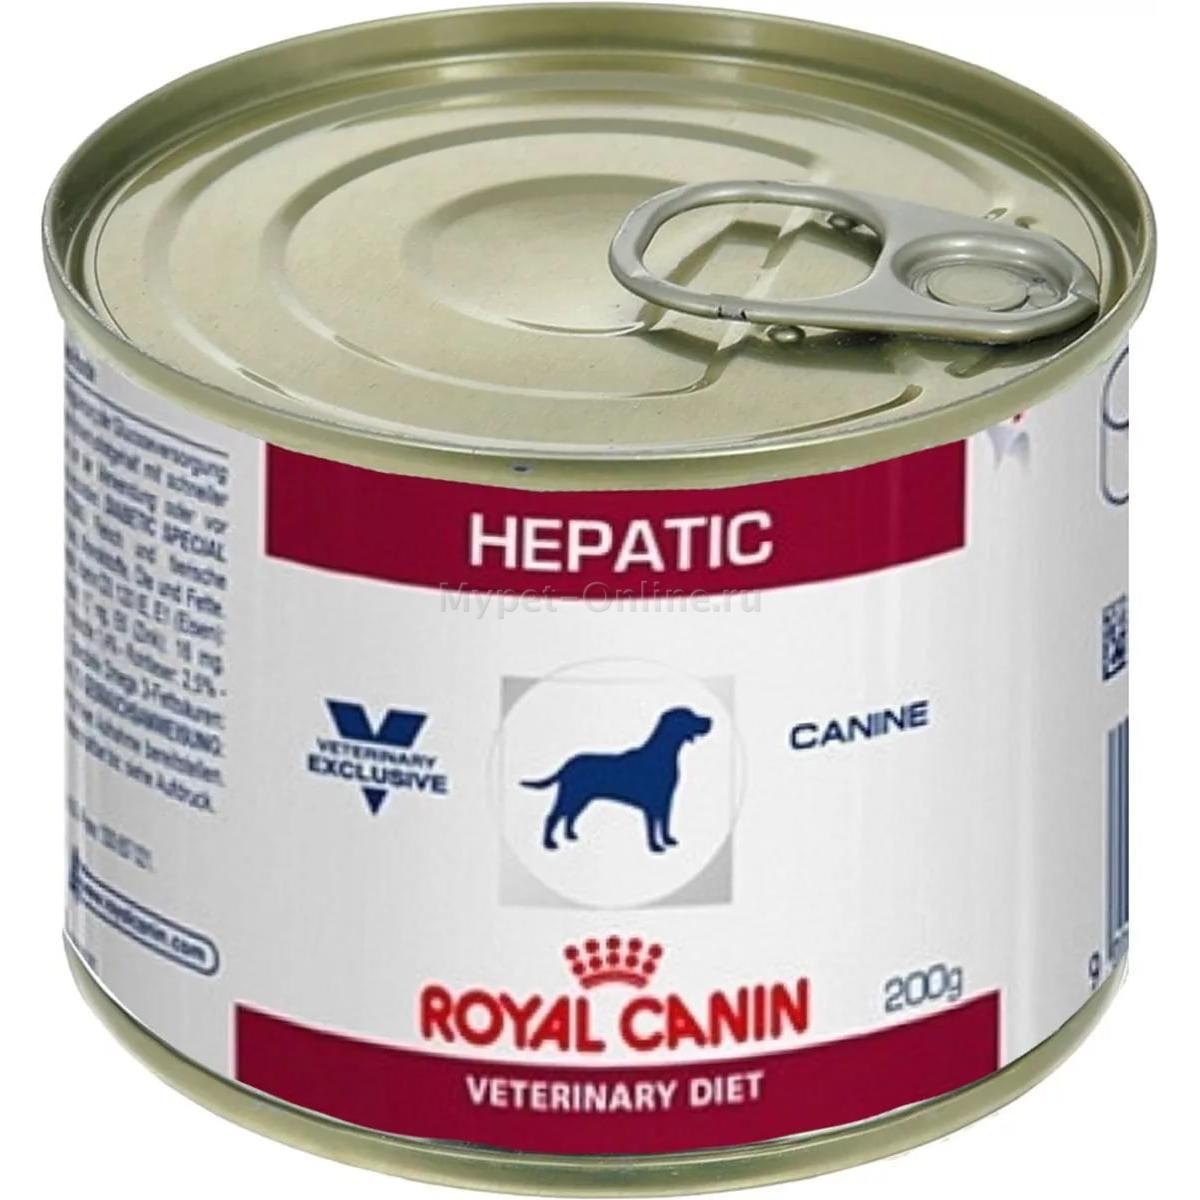 Royal Canin Gastrointestinal Для Собак Консервы Купить